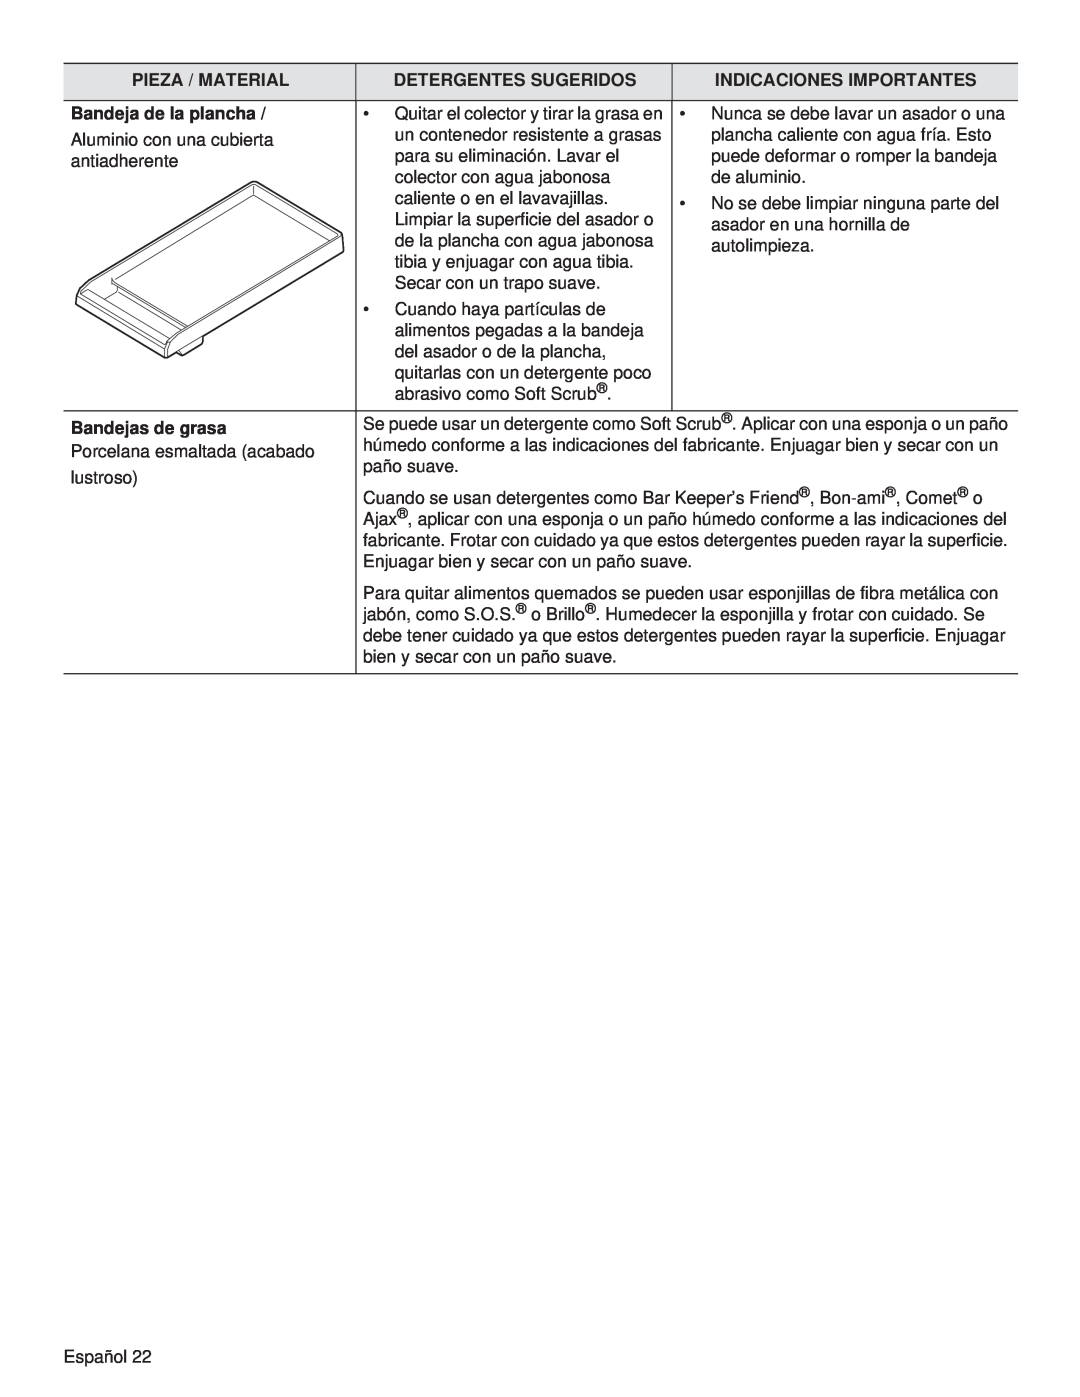 Thermador PCG48, PCG36, PCG30 manual Pieza / Material, Detergentes Sugeridos, Indicaciones Importantes, Bandeja de la plancha 